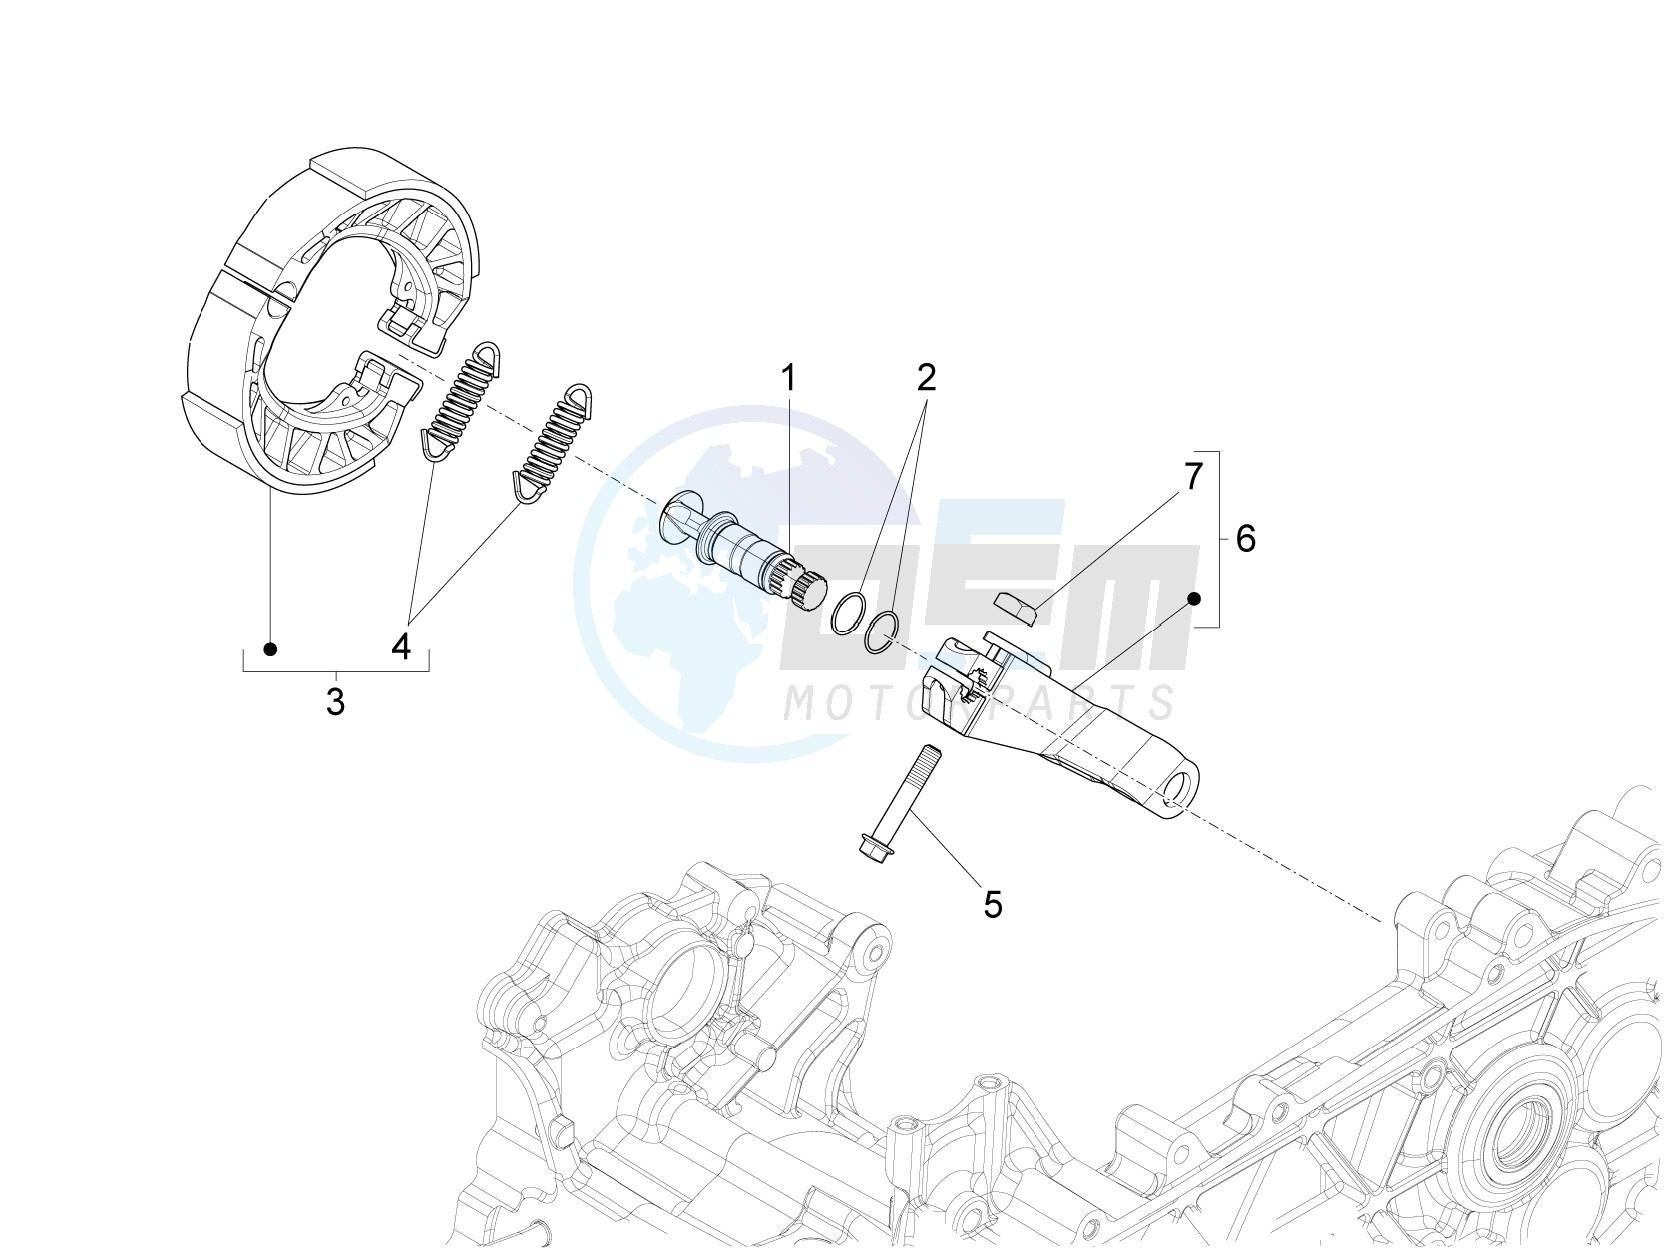 Rear brake - Brake jaw blueprint